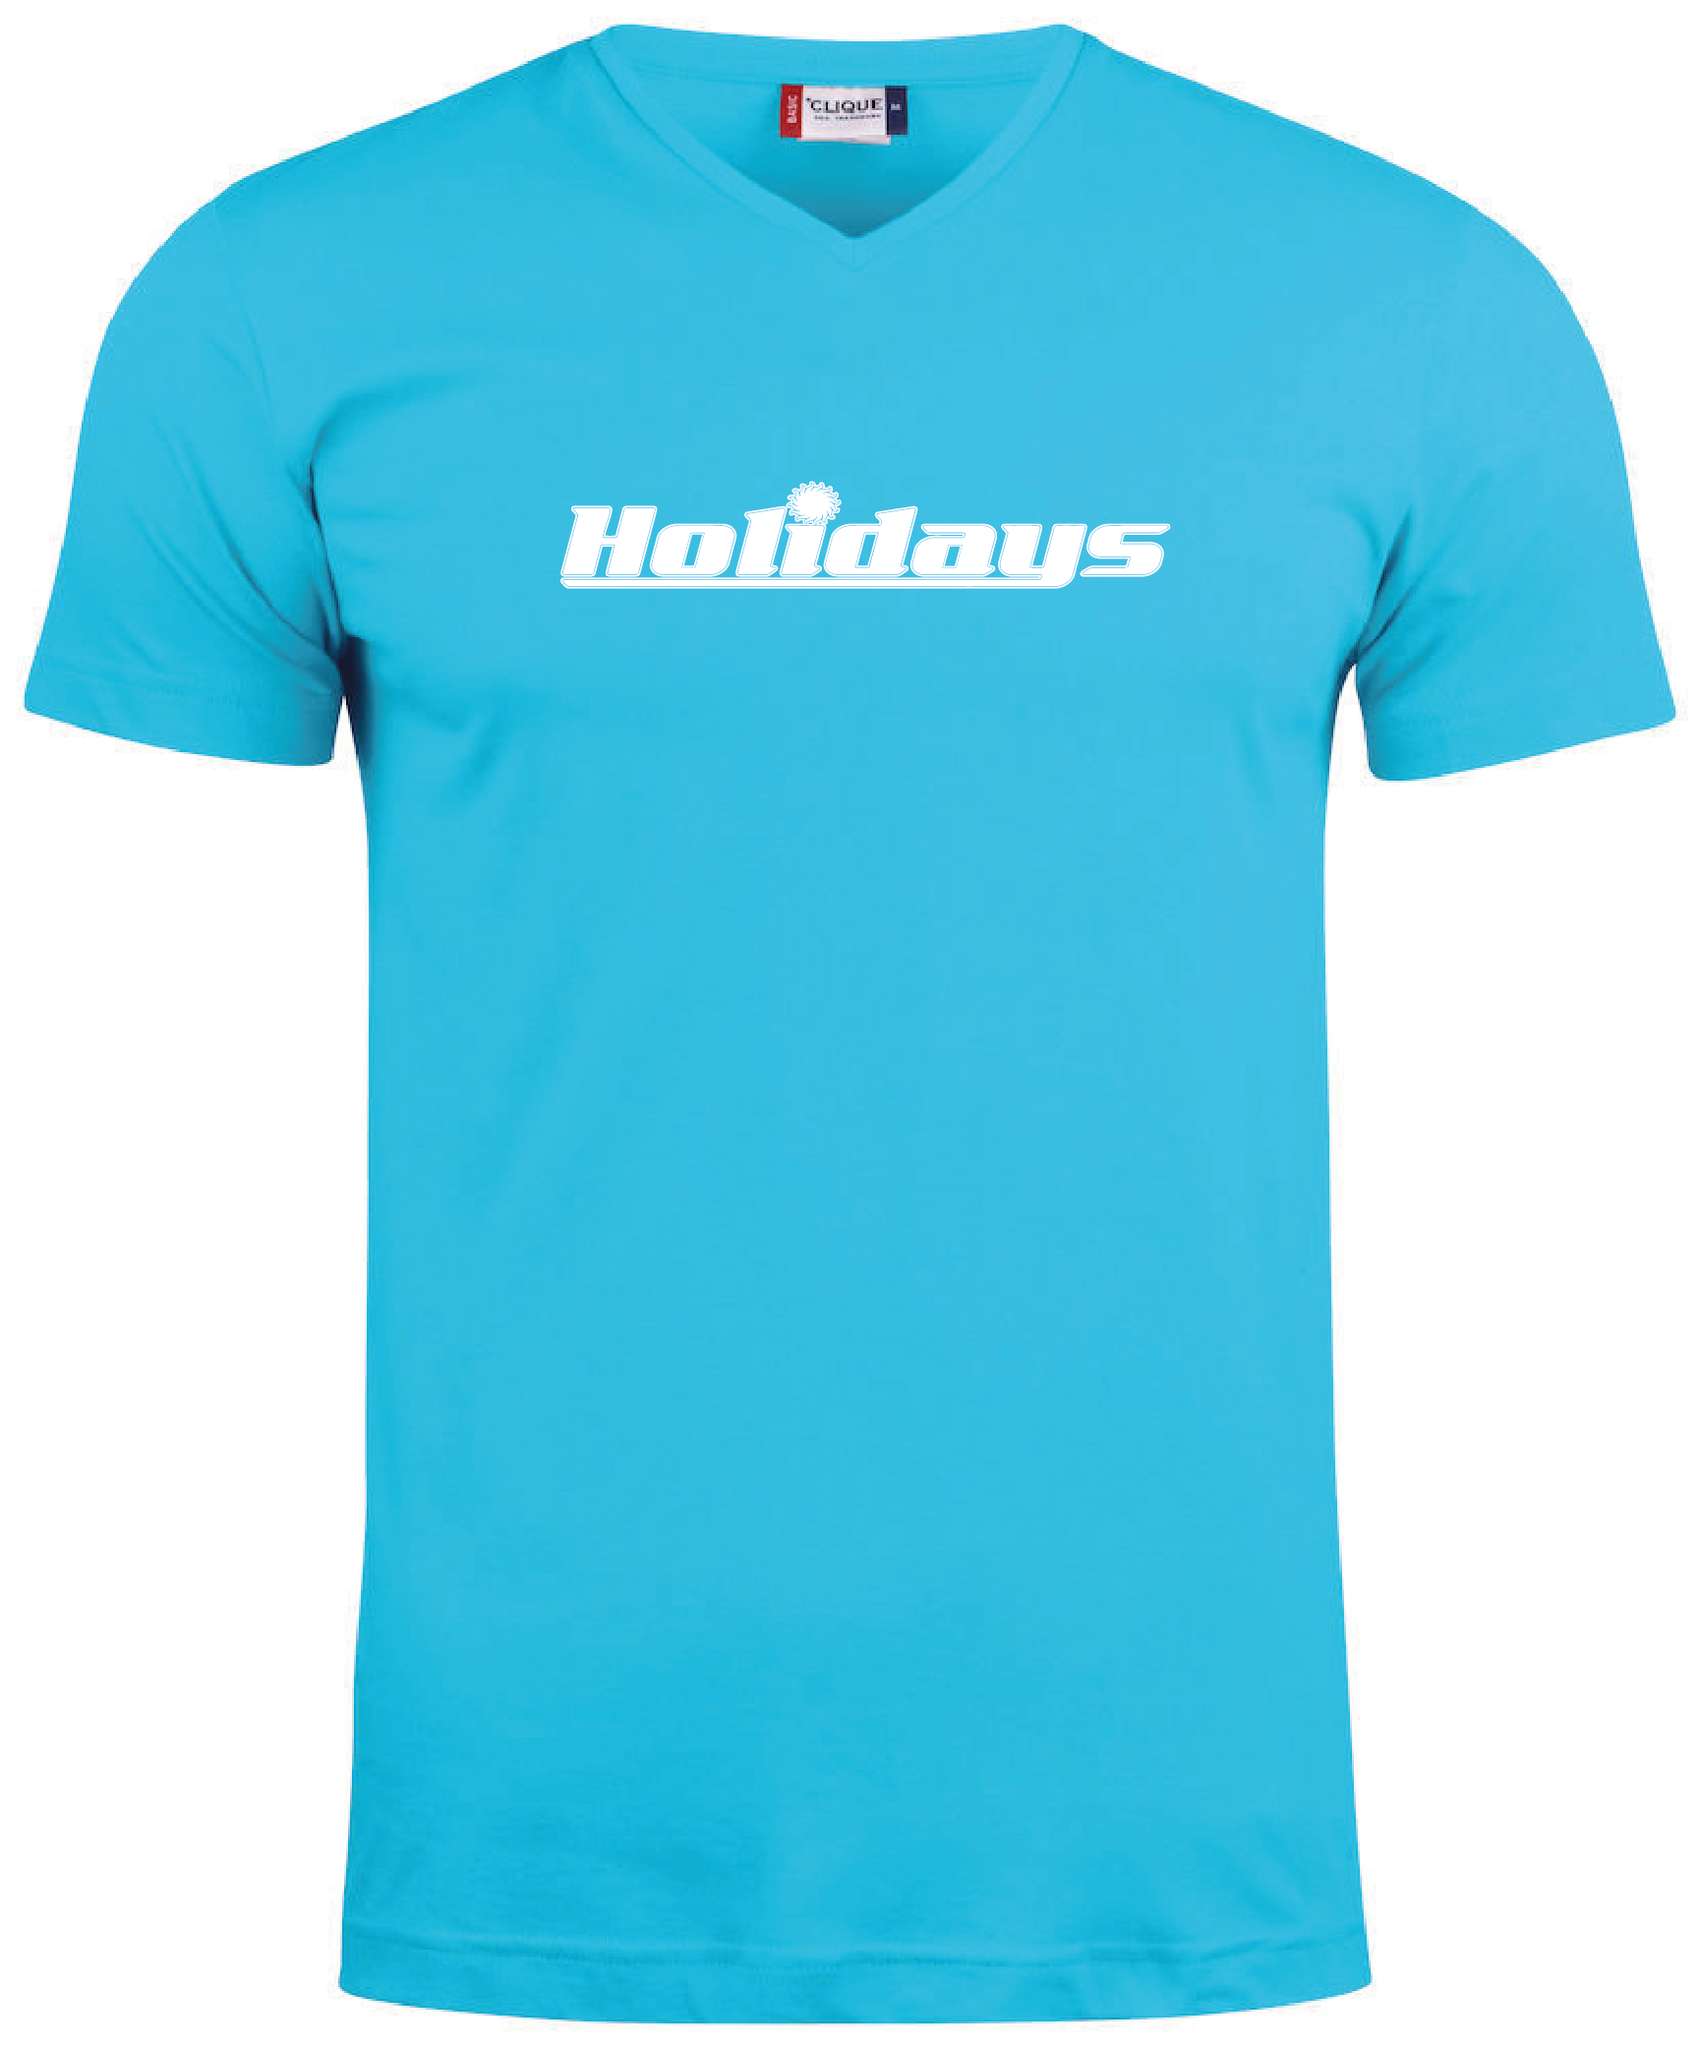 Turkos V-hals T-shirt "HOLIDAYS"